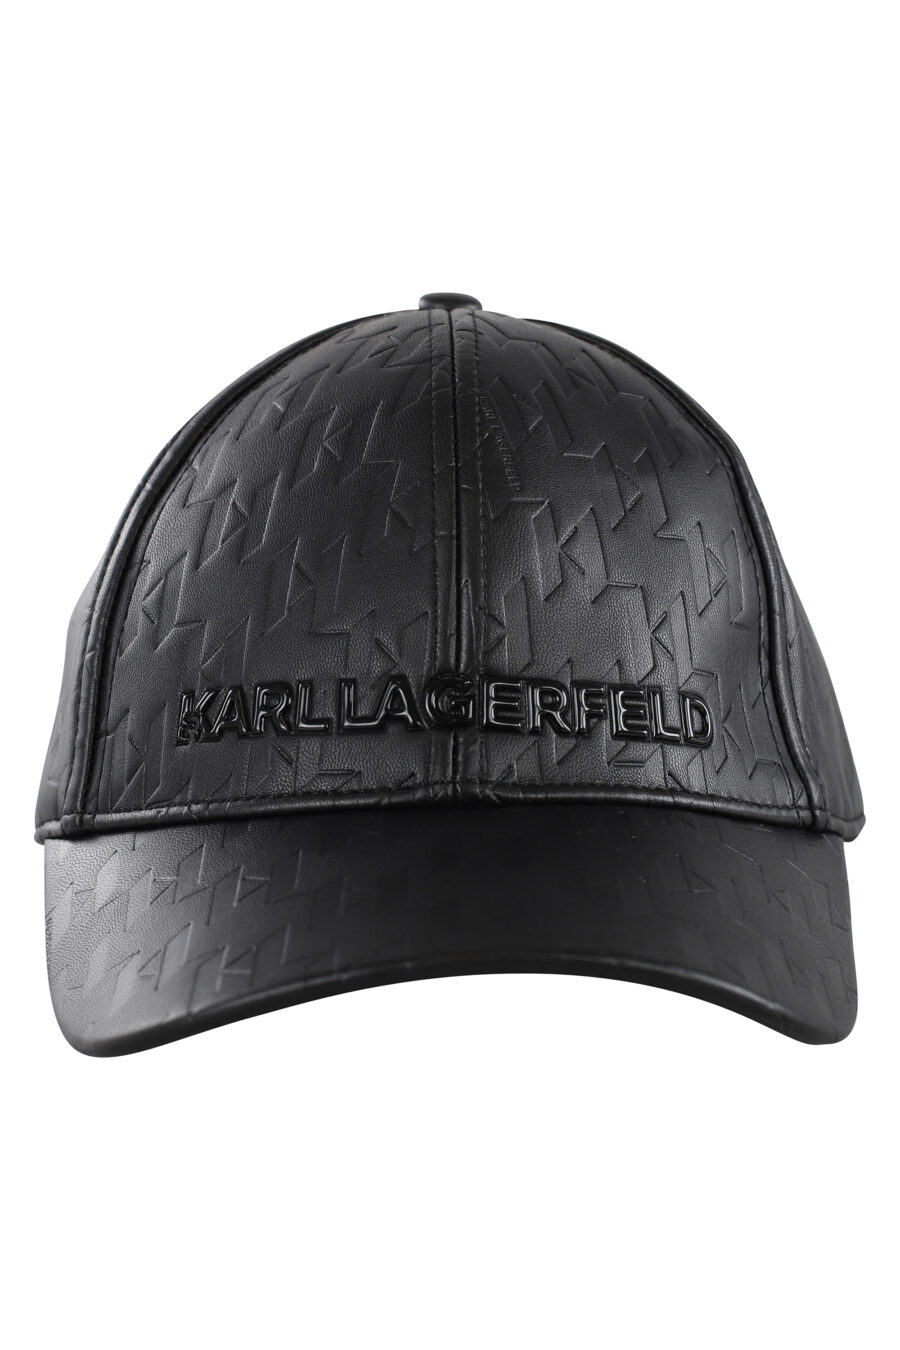 Gorra negra de cuero con logo monocromático - IMG 7064